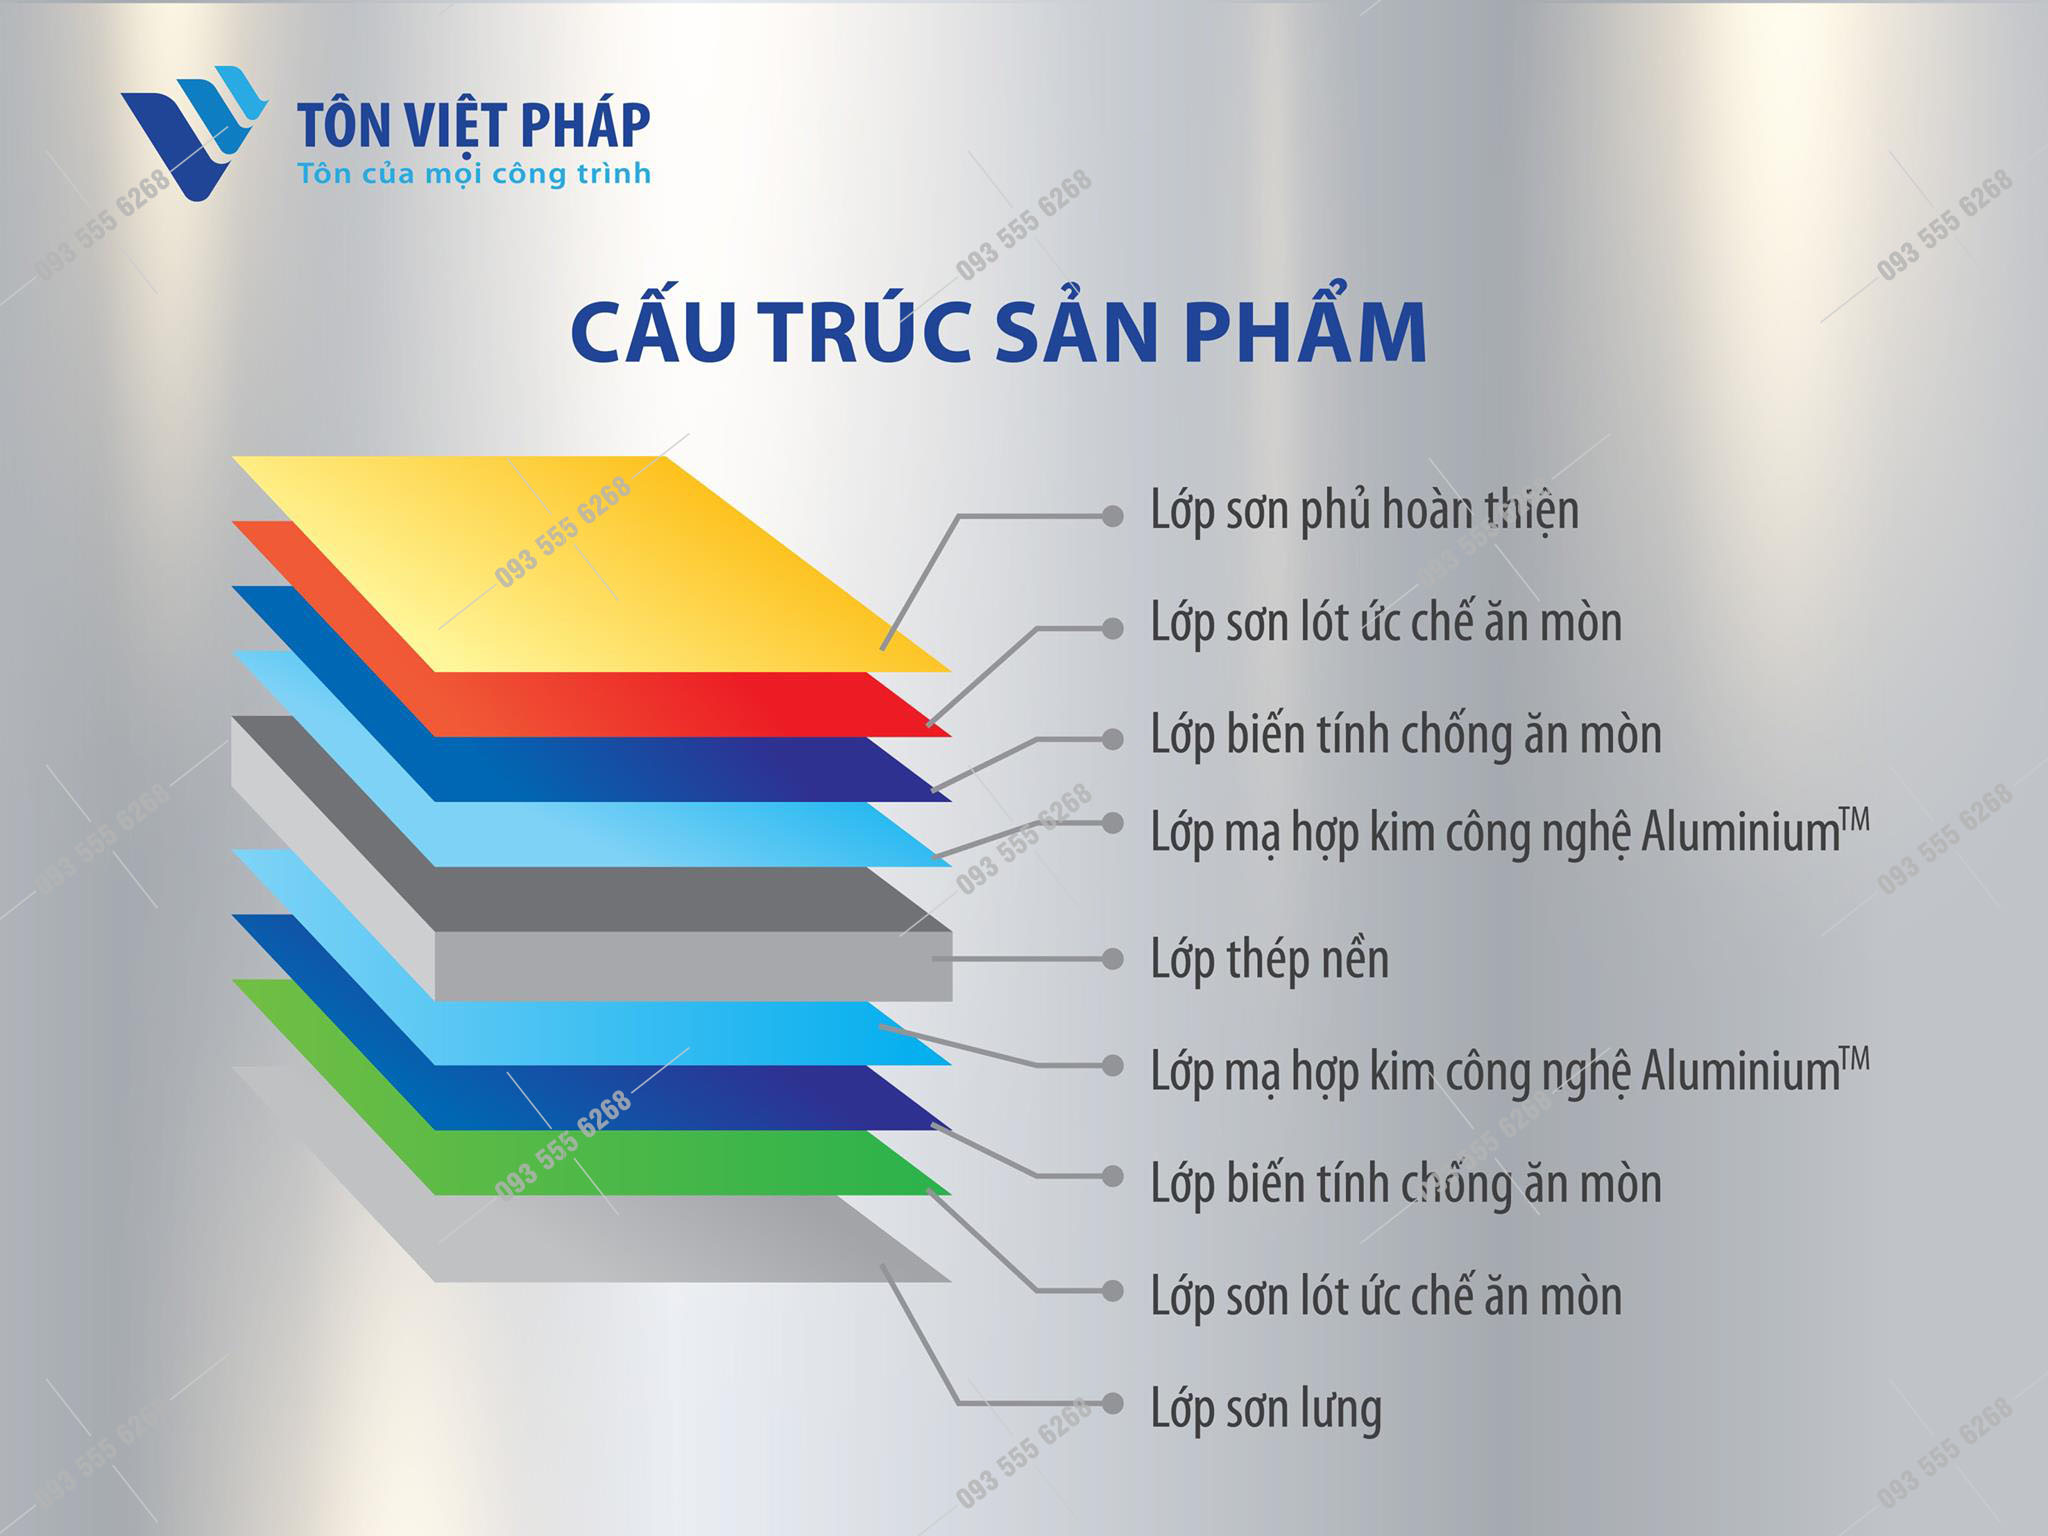 Cấu tạo sản phẩm tôn Việt Pháp